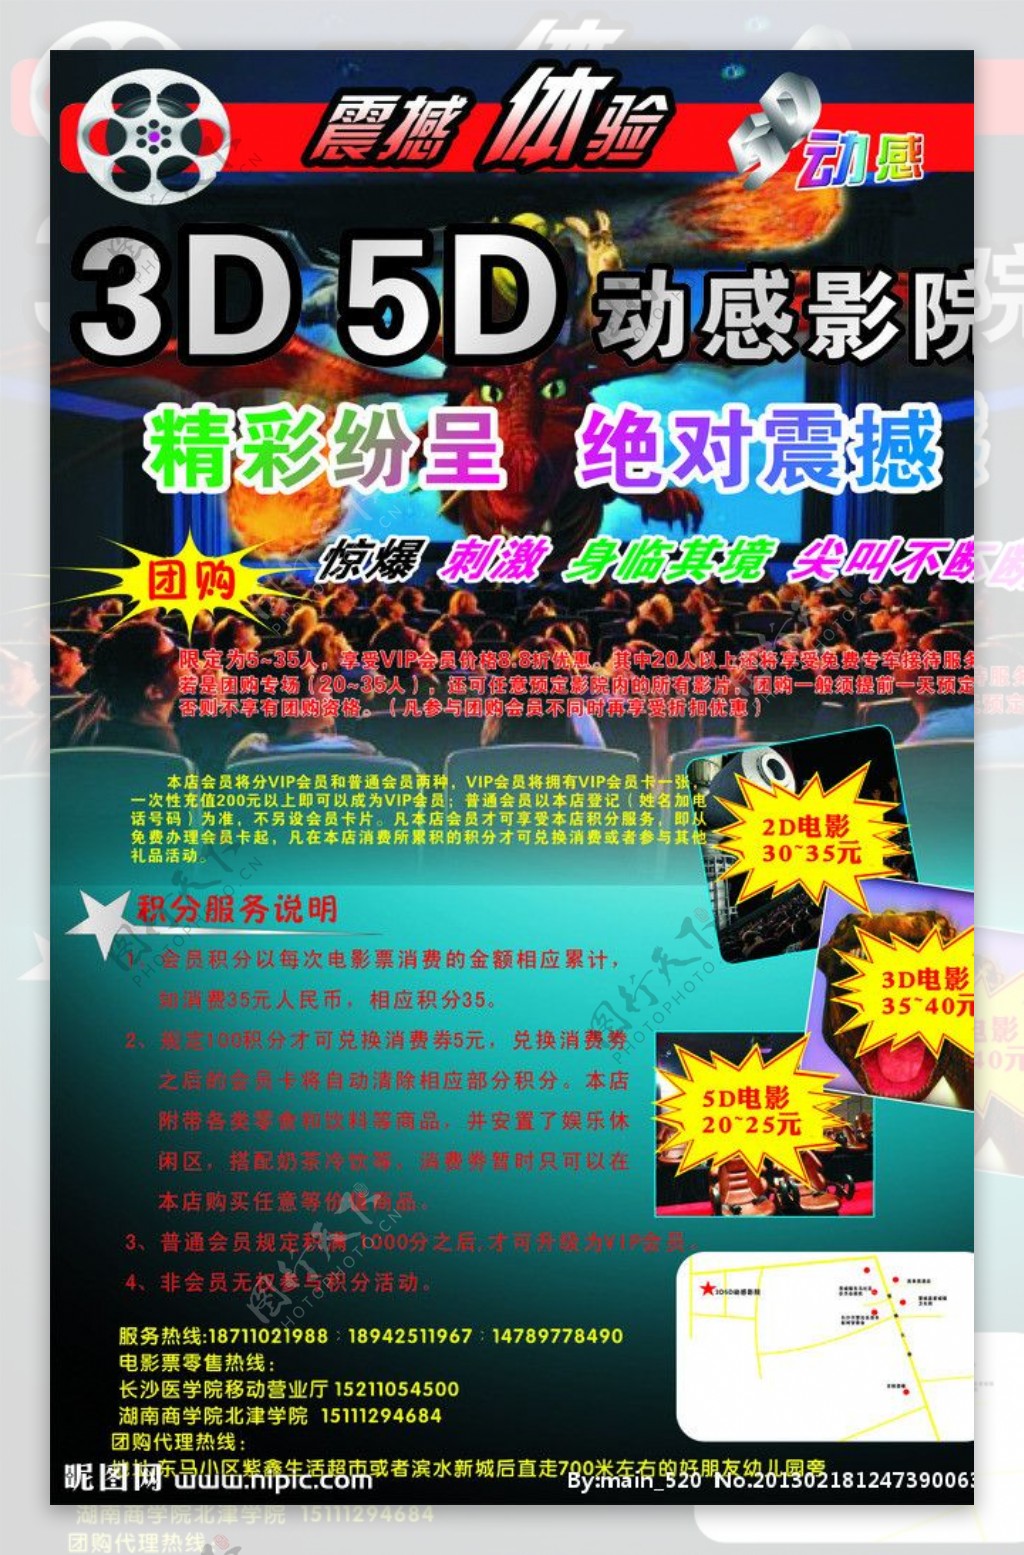 3D5D影院图片